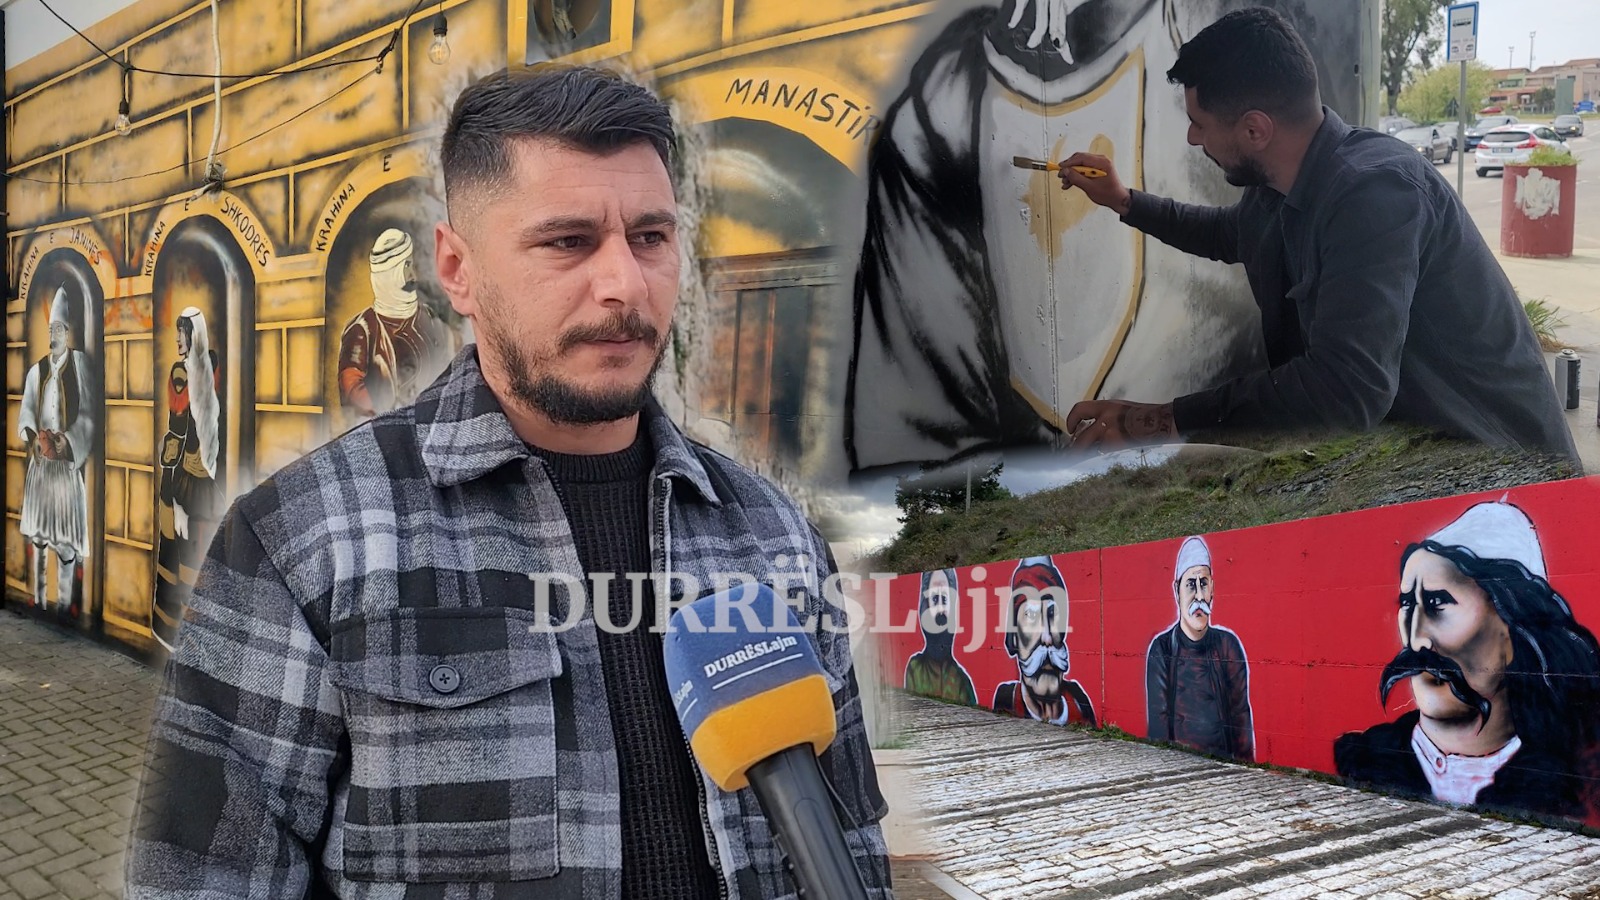 Flet artisti i muraleve, Bledar Çakalli: Në fillim kisha familjen kundër. Ja kur jam ndjerë i kërcënuar! (VIDEO)